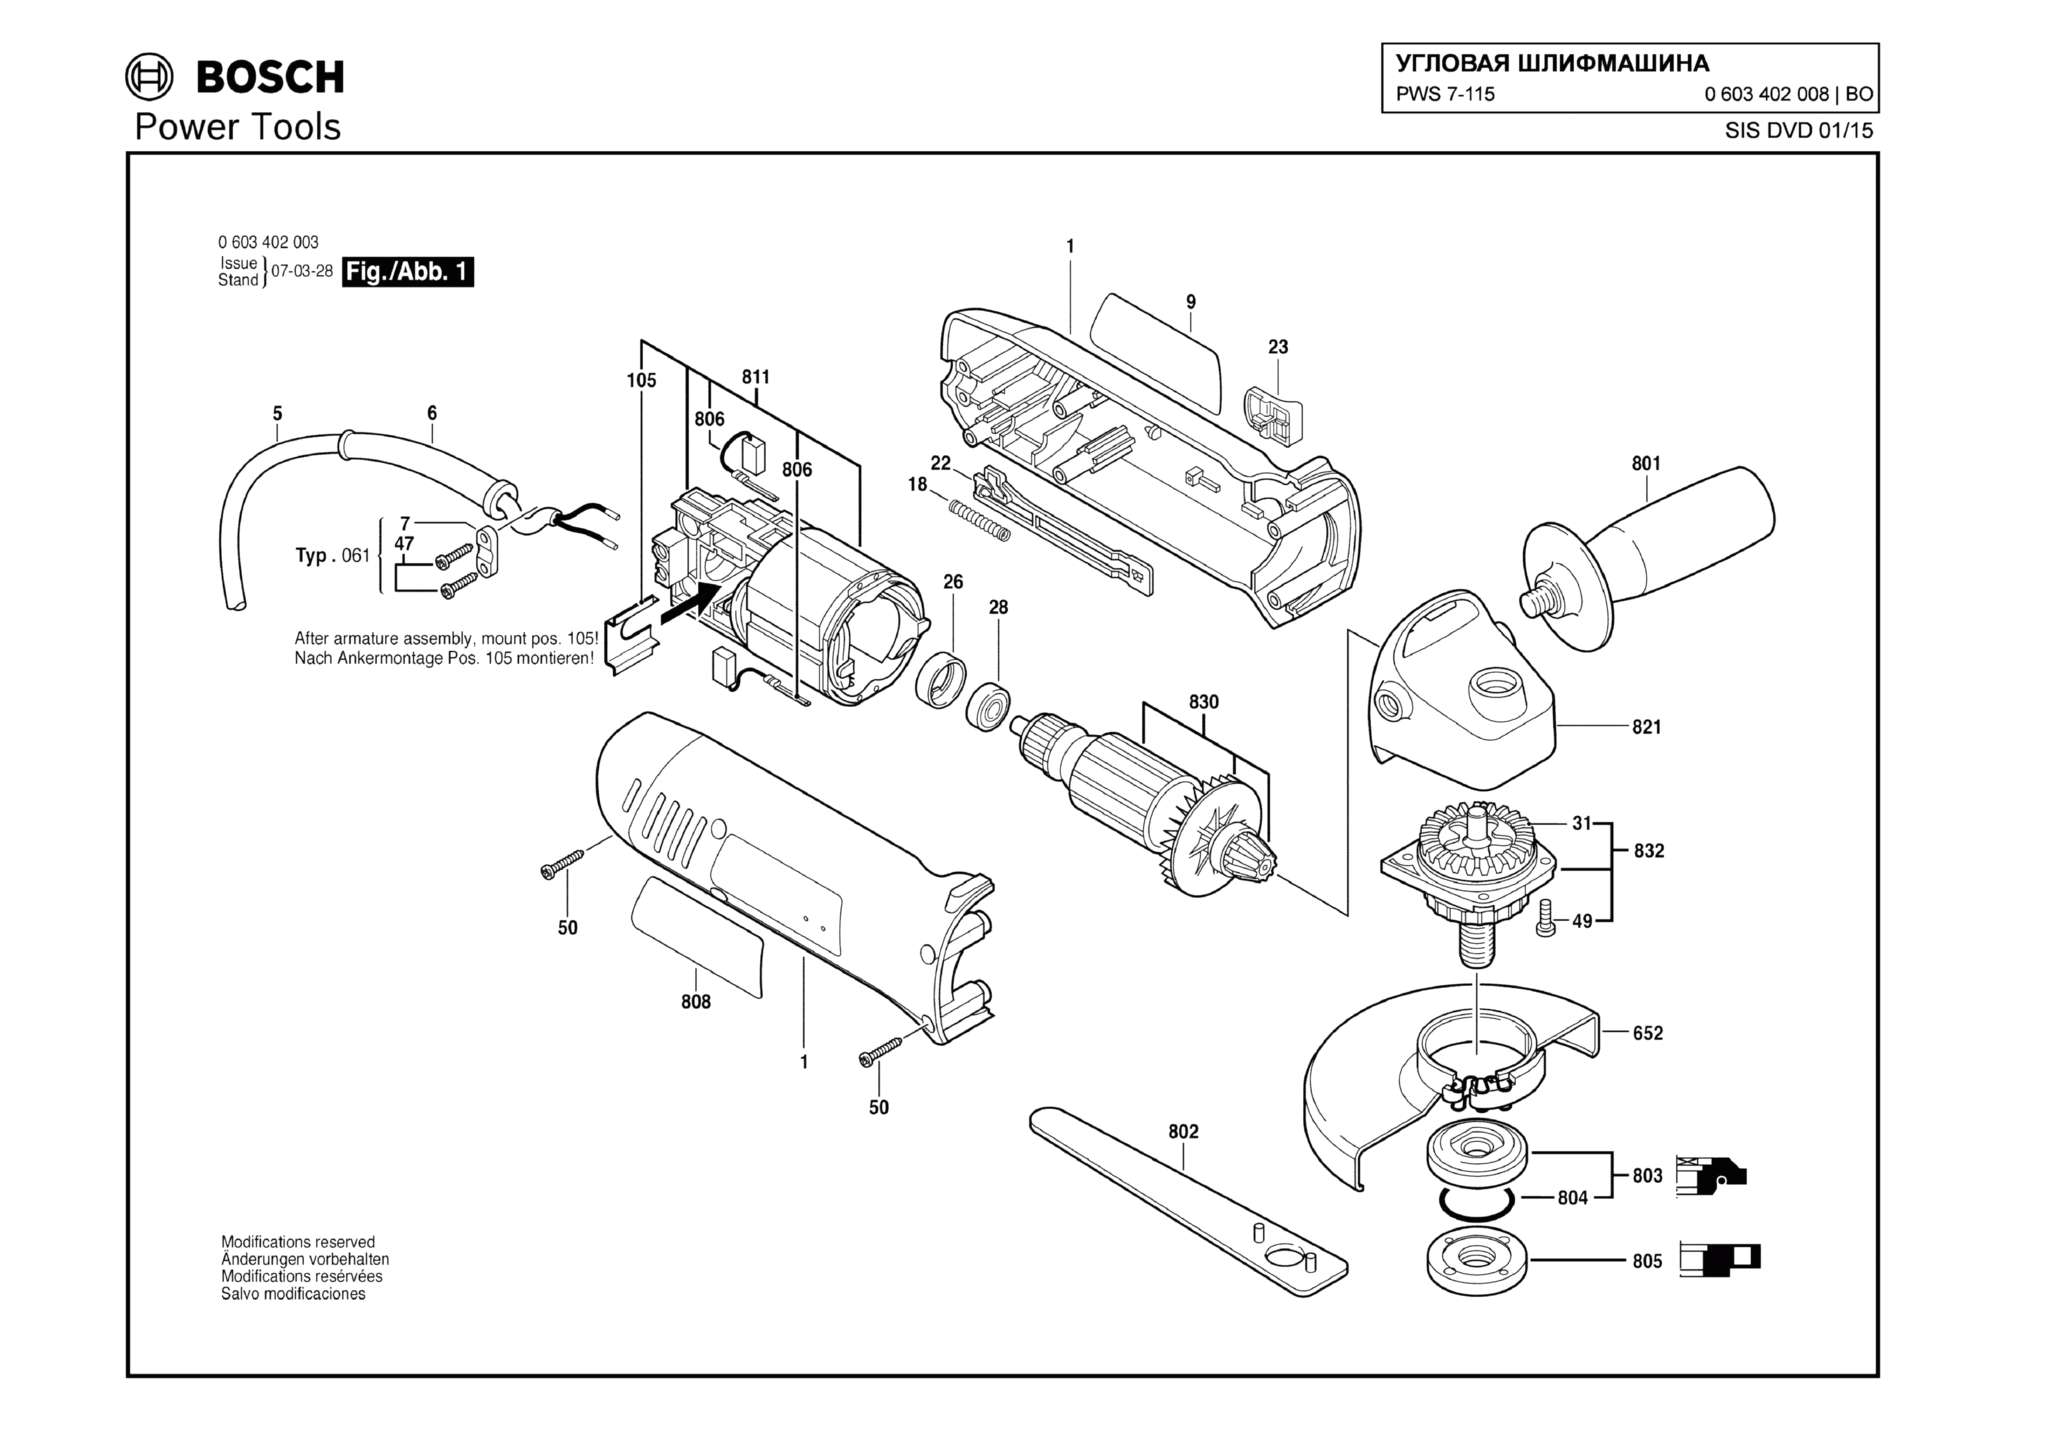 Запчасти, схема и деталировка Bosch PWS 7-115 (ТИП 0603402008)